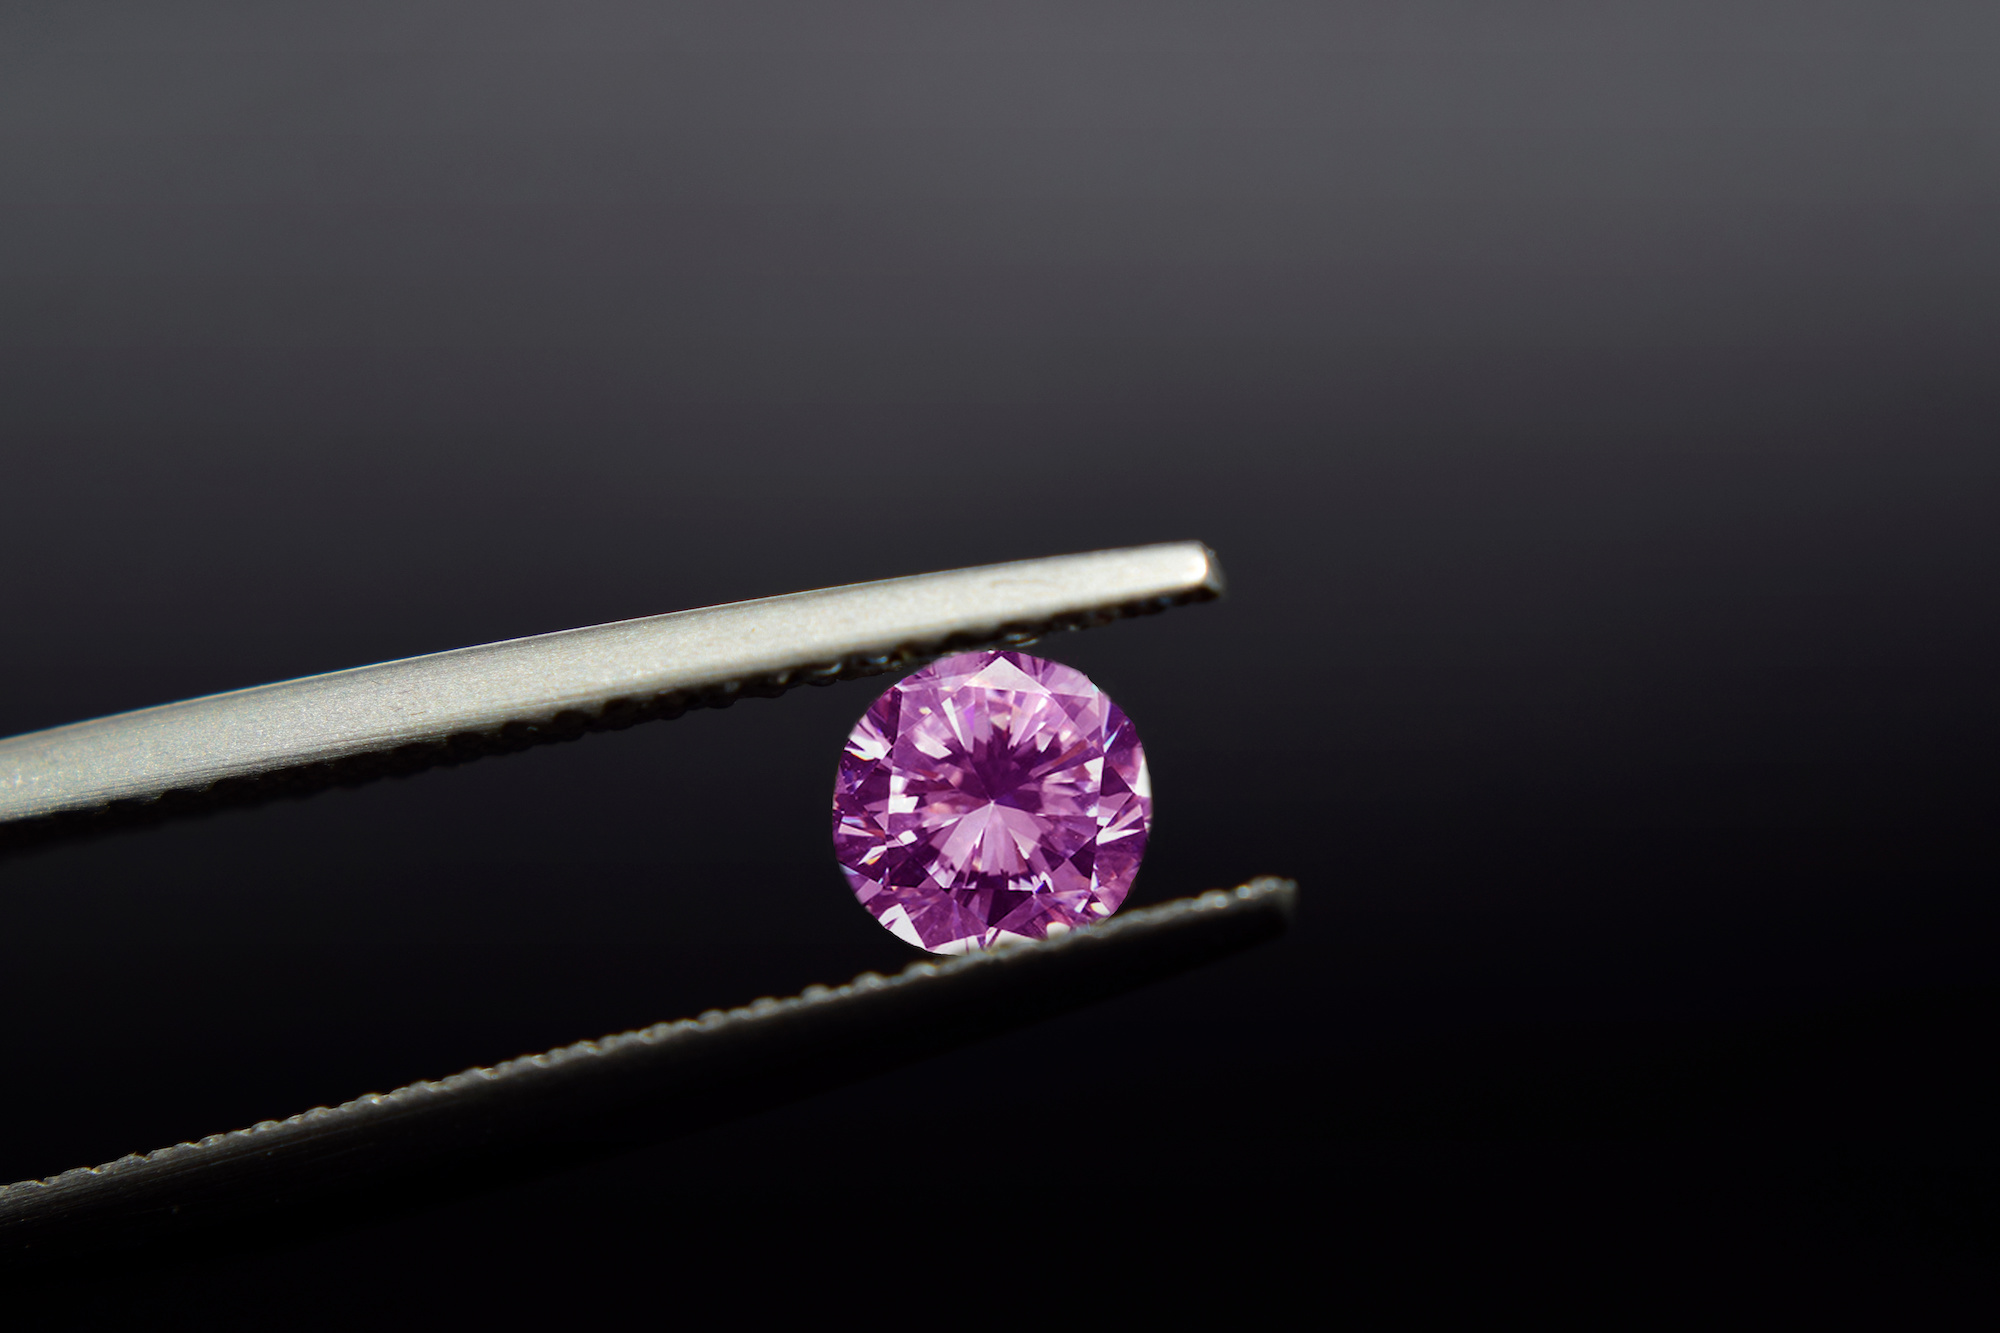 Les diamants roses ne proviennent quasi-exclusivement que d'un seul gisement : la mine d'Argyle en Australie. © Diamon jewelry, Adobe stock